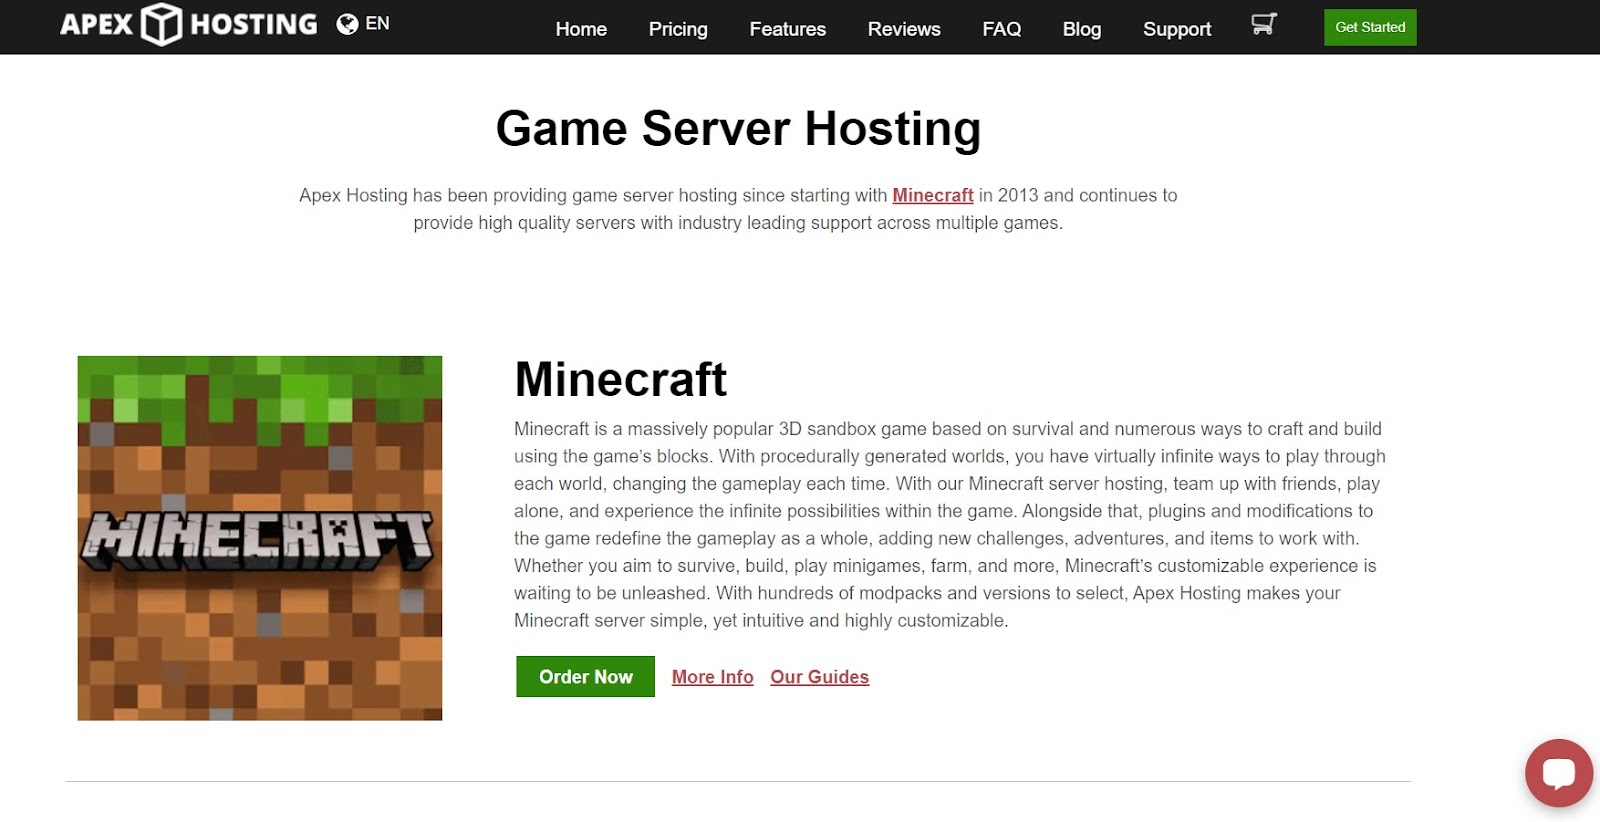 Apex Hosting game server hosting landing page.